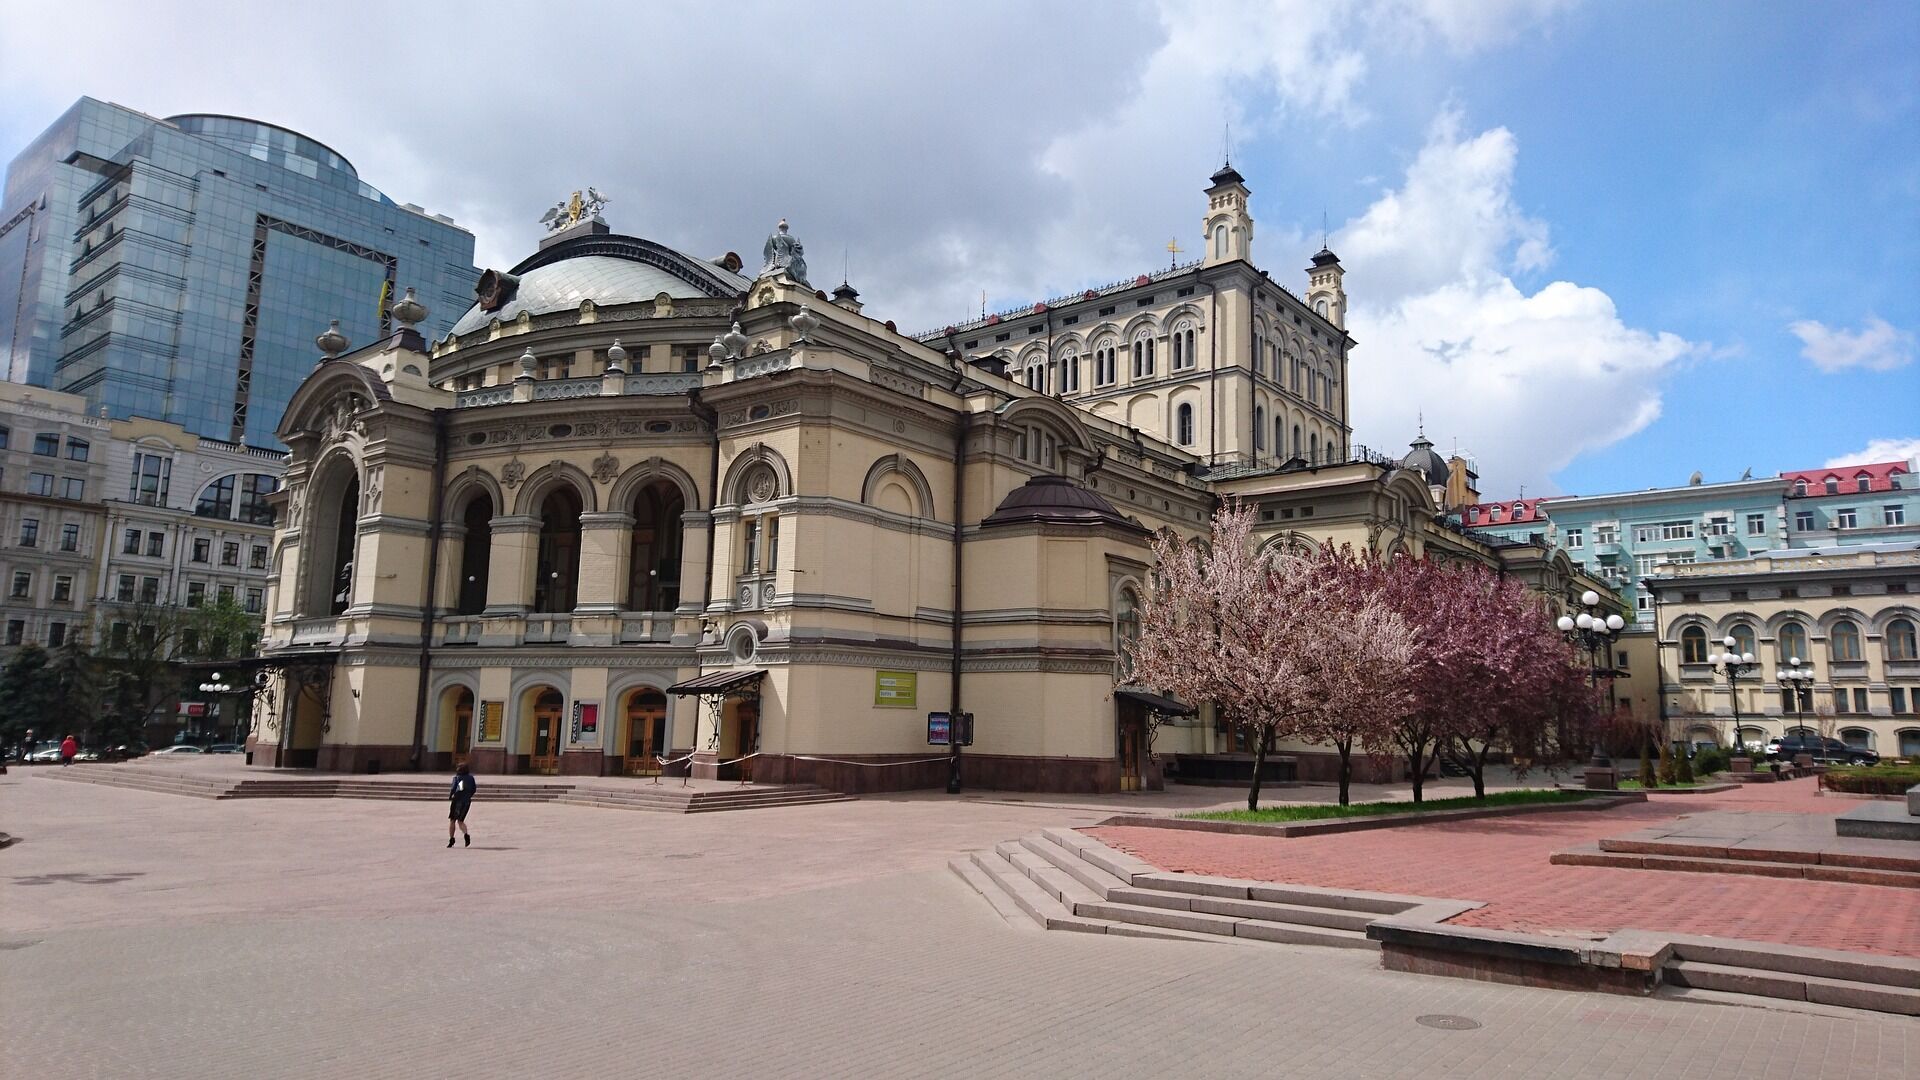 Национальная опера непрерывно работает в Киеве уже несколько веков.